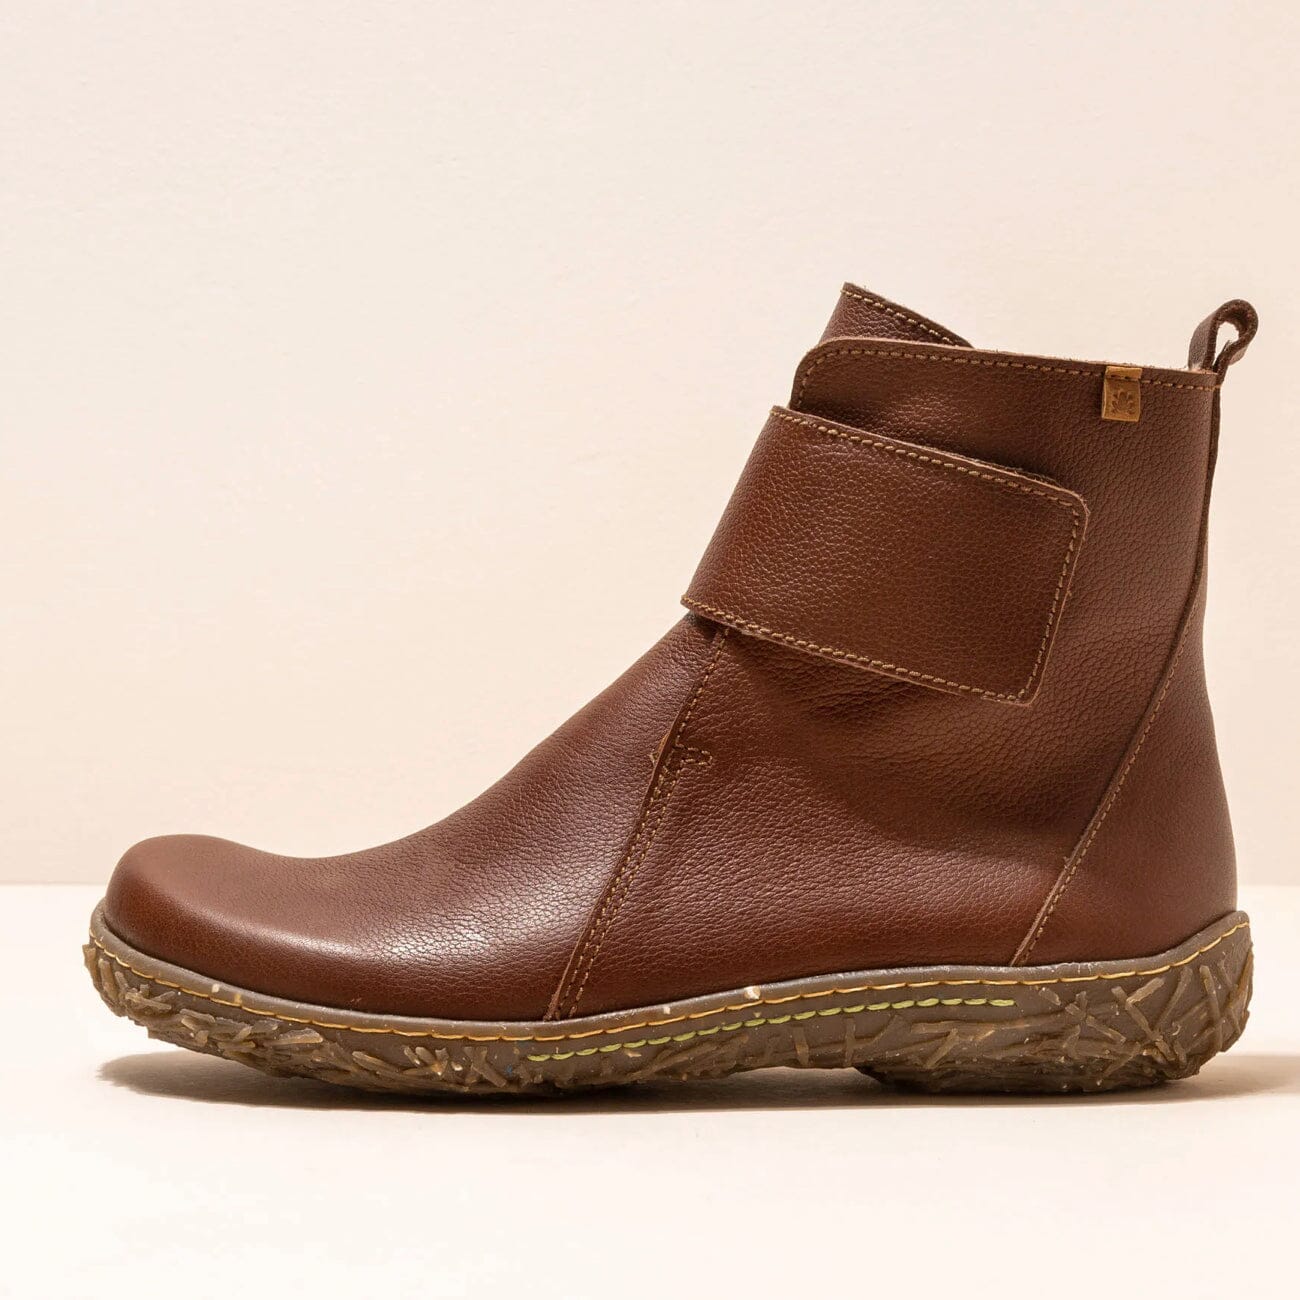 El Naturalista, NIDO ELLA, Boot, Natural Grain Leather, Wood Boots El Natura Lista Wood 37 